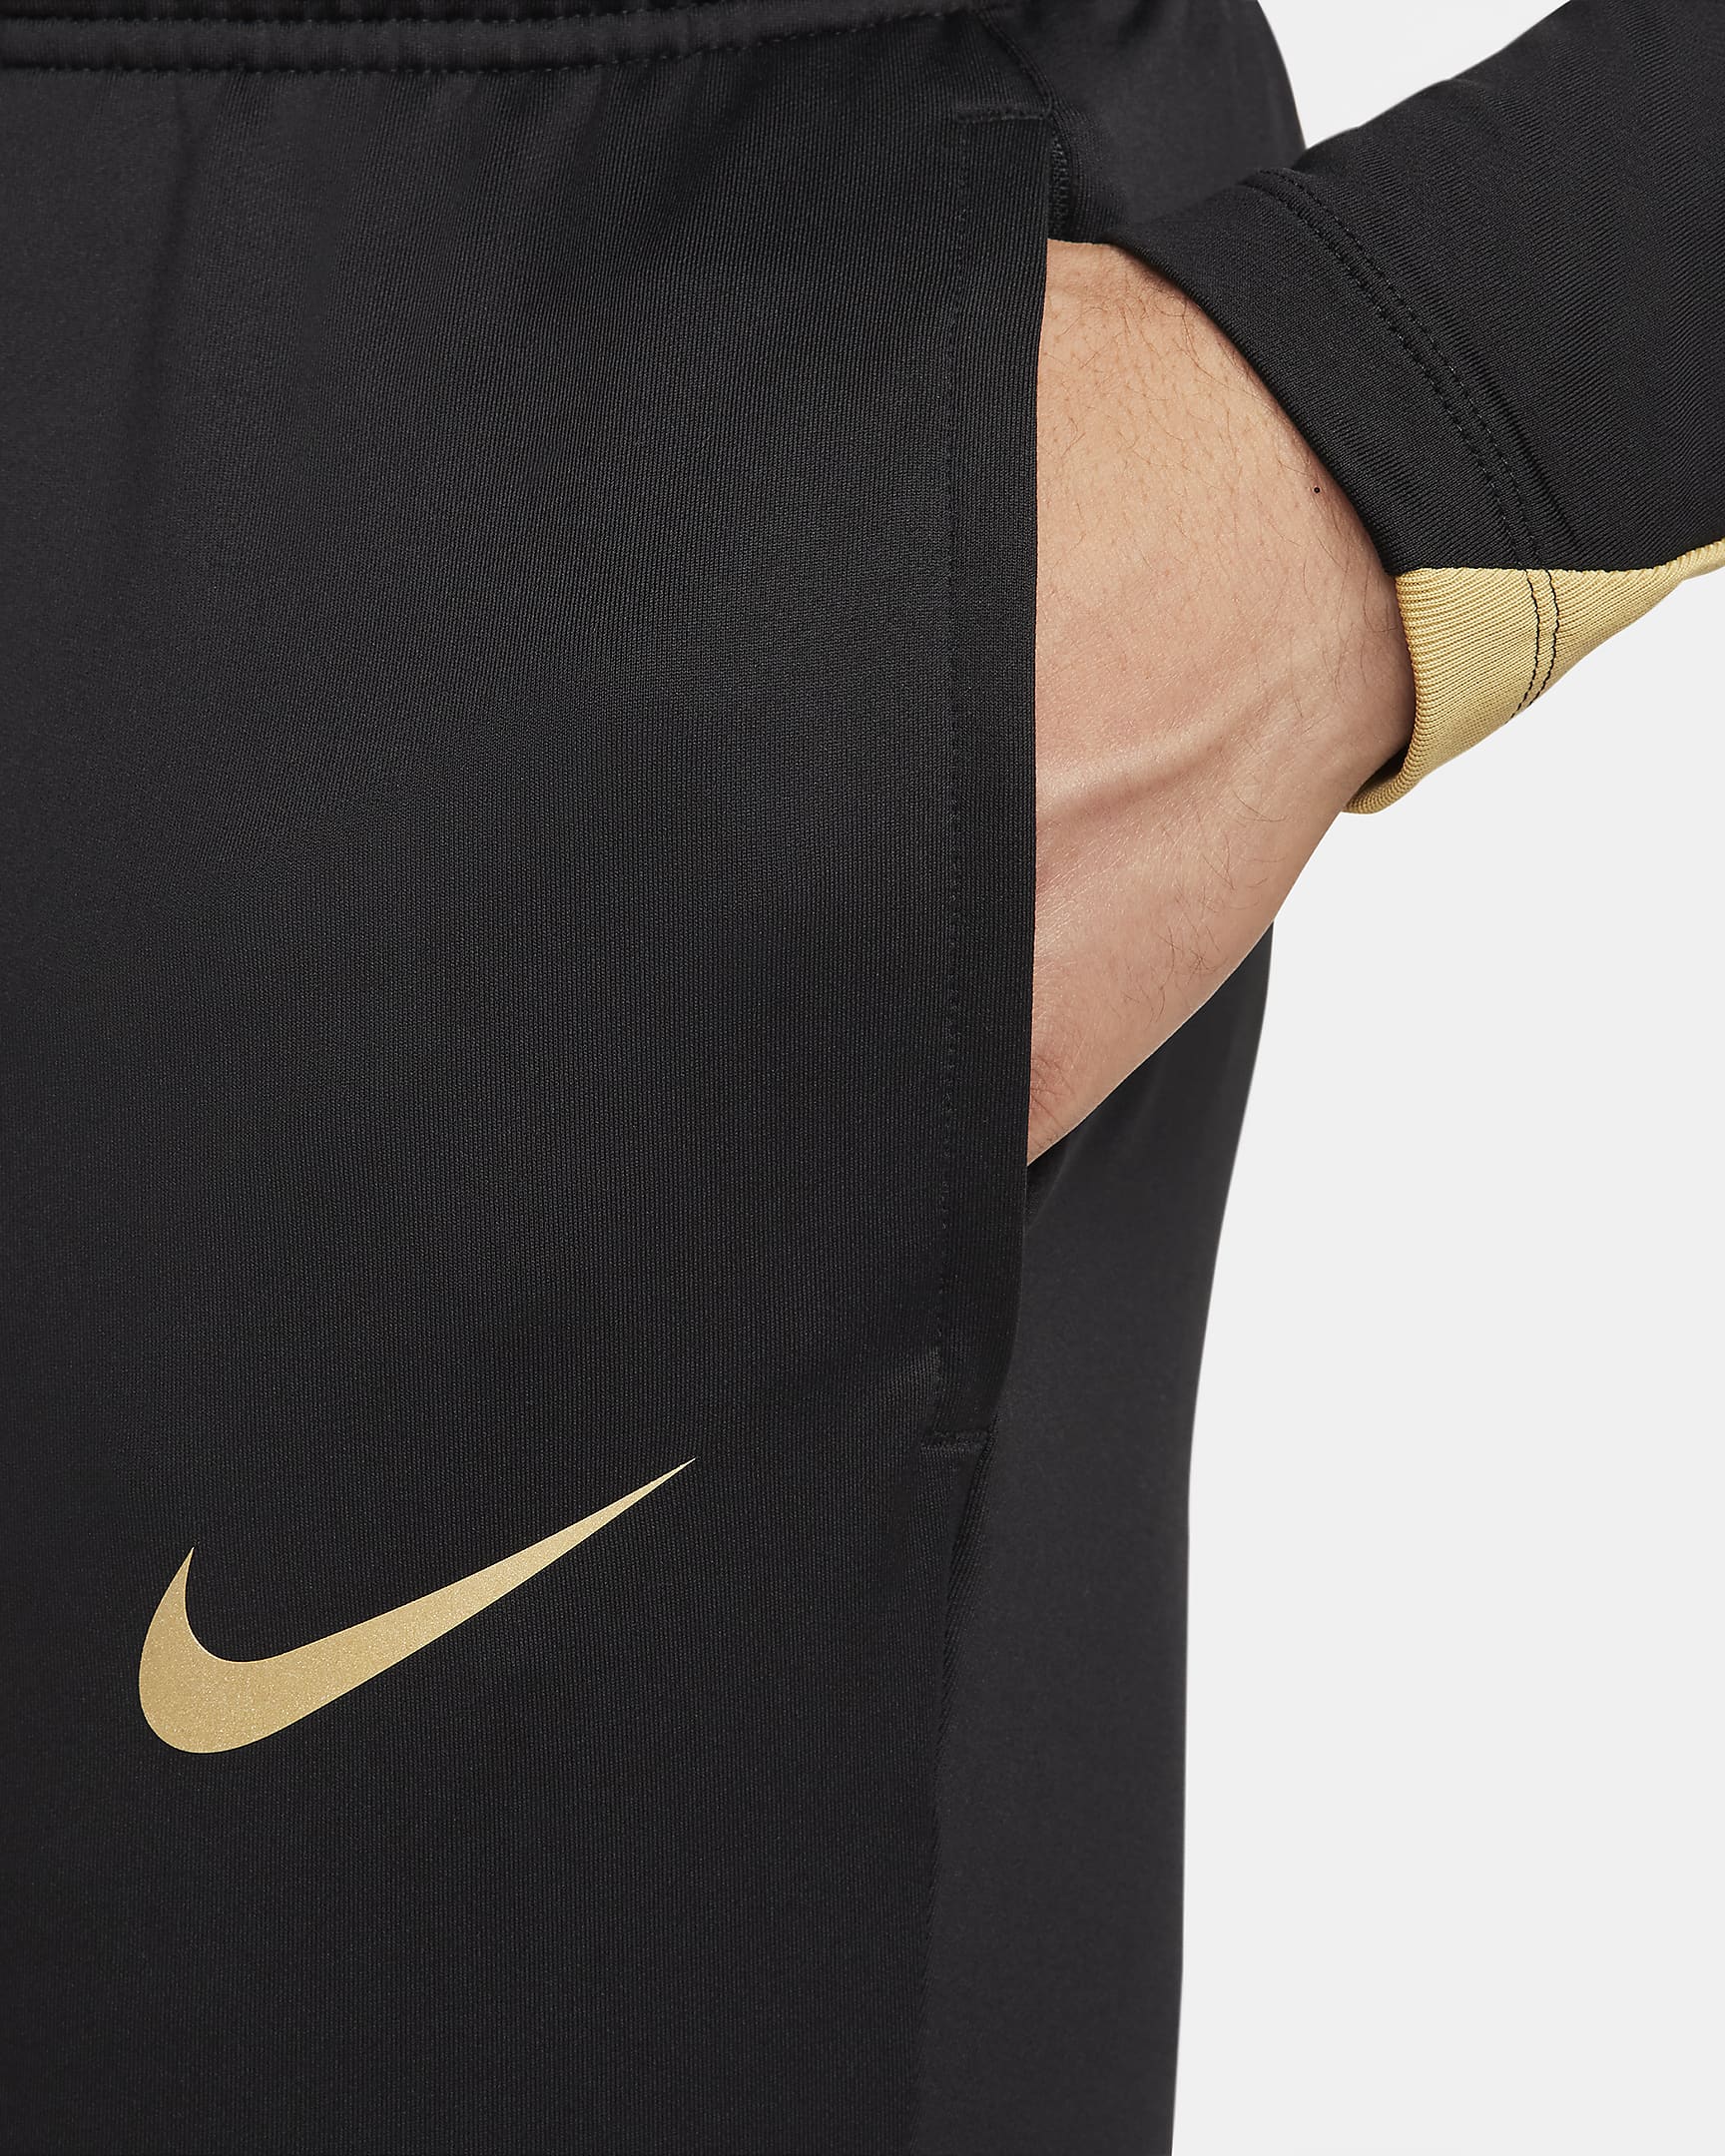 Nike Strike Dri-FIT voetbalbroek voor heren - Zwart/Zwart/Jersey Gold/Metallic Gold